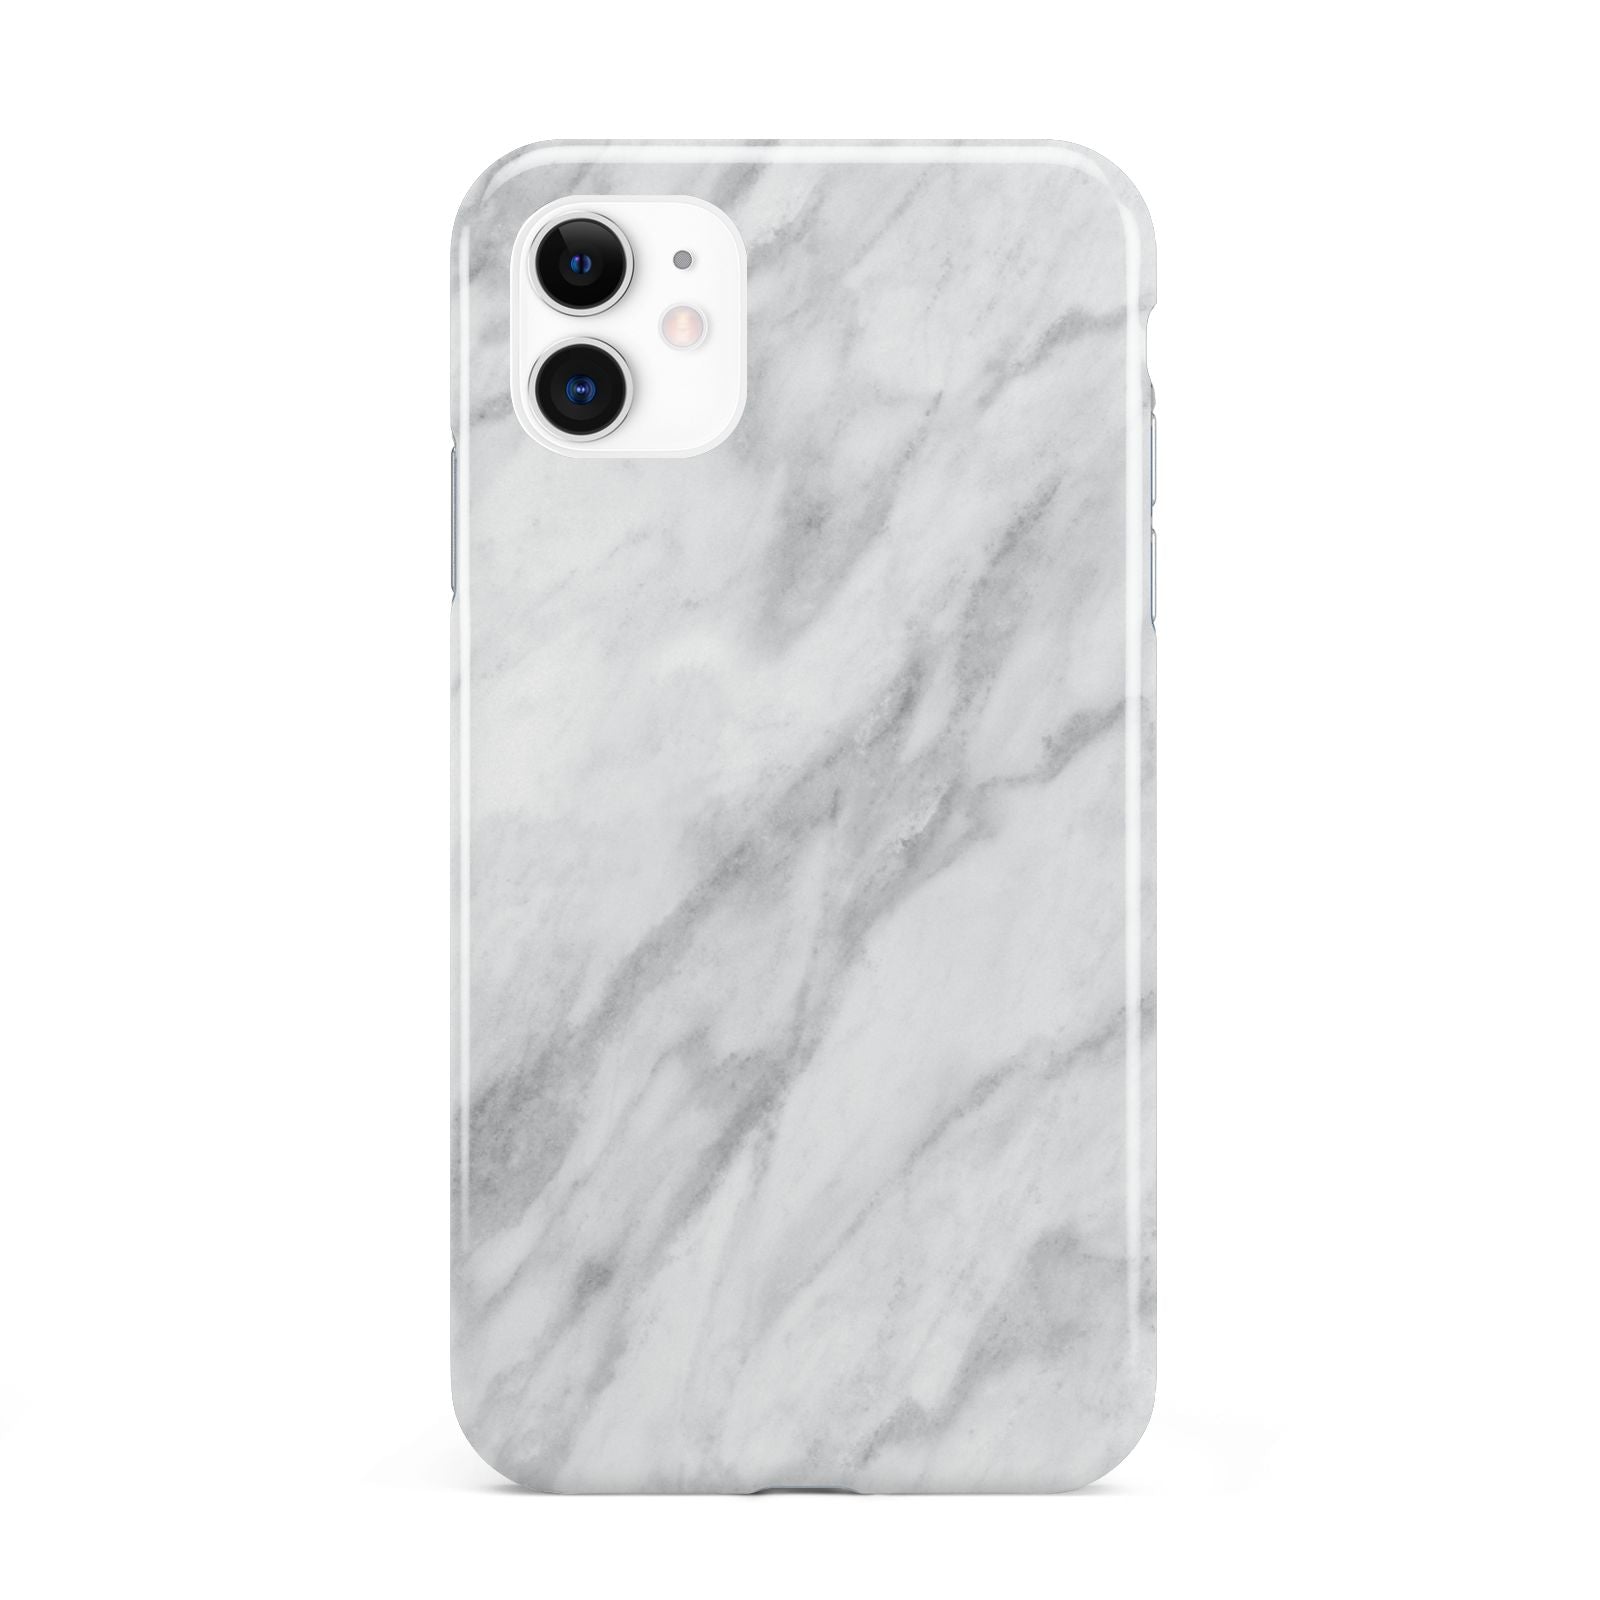 Faux Marble Effect Italian iPhone 11 3D Tough Case